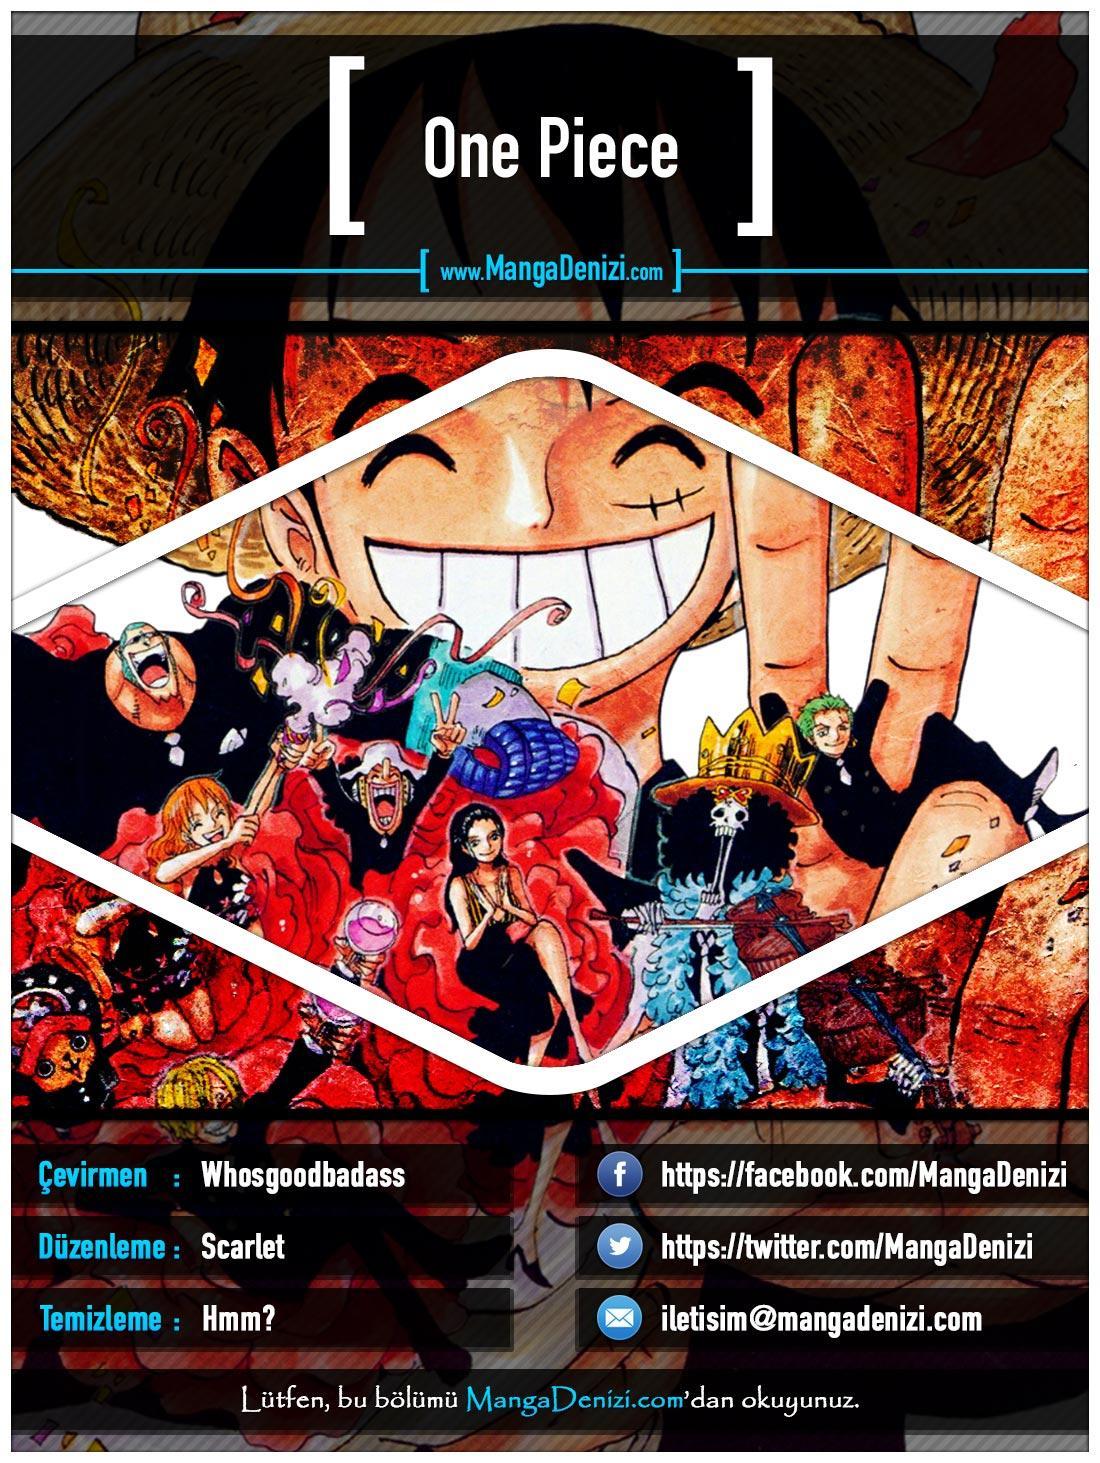 One Piece [Renkli] mangasının 0651 bölümünün 1. sayfasını okuyorsunuz.